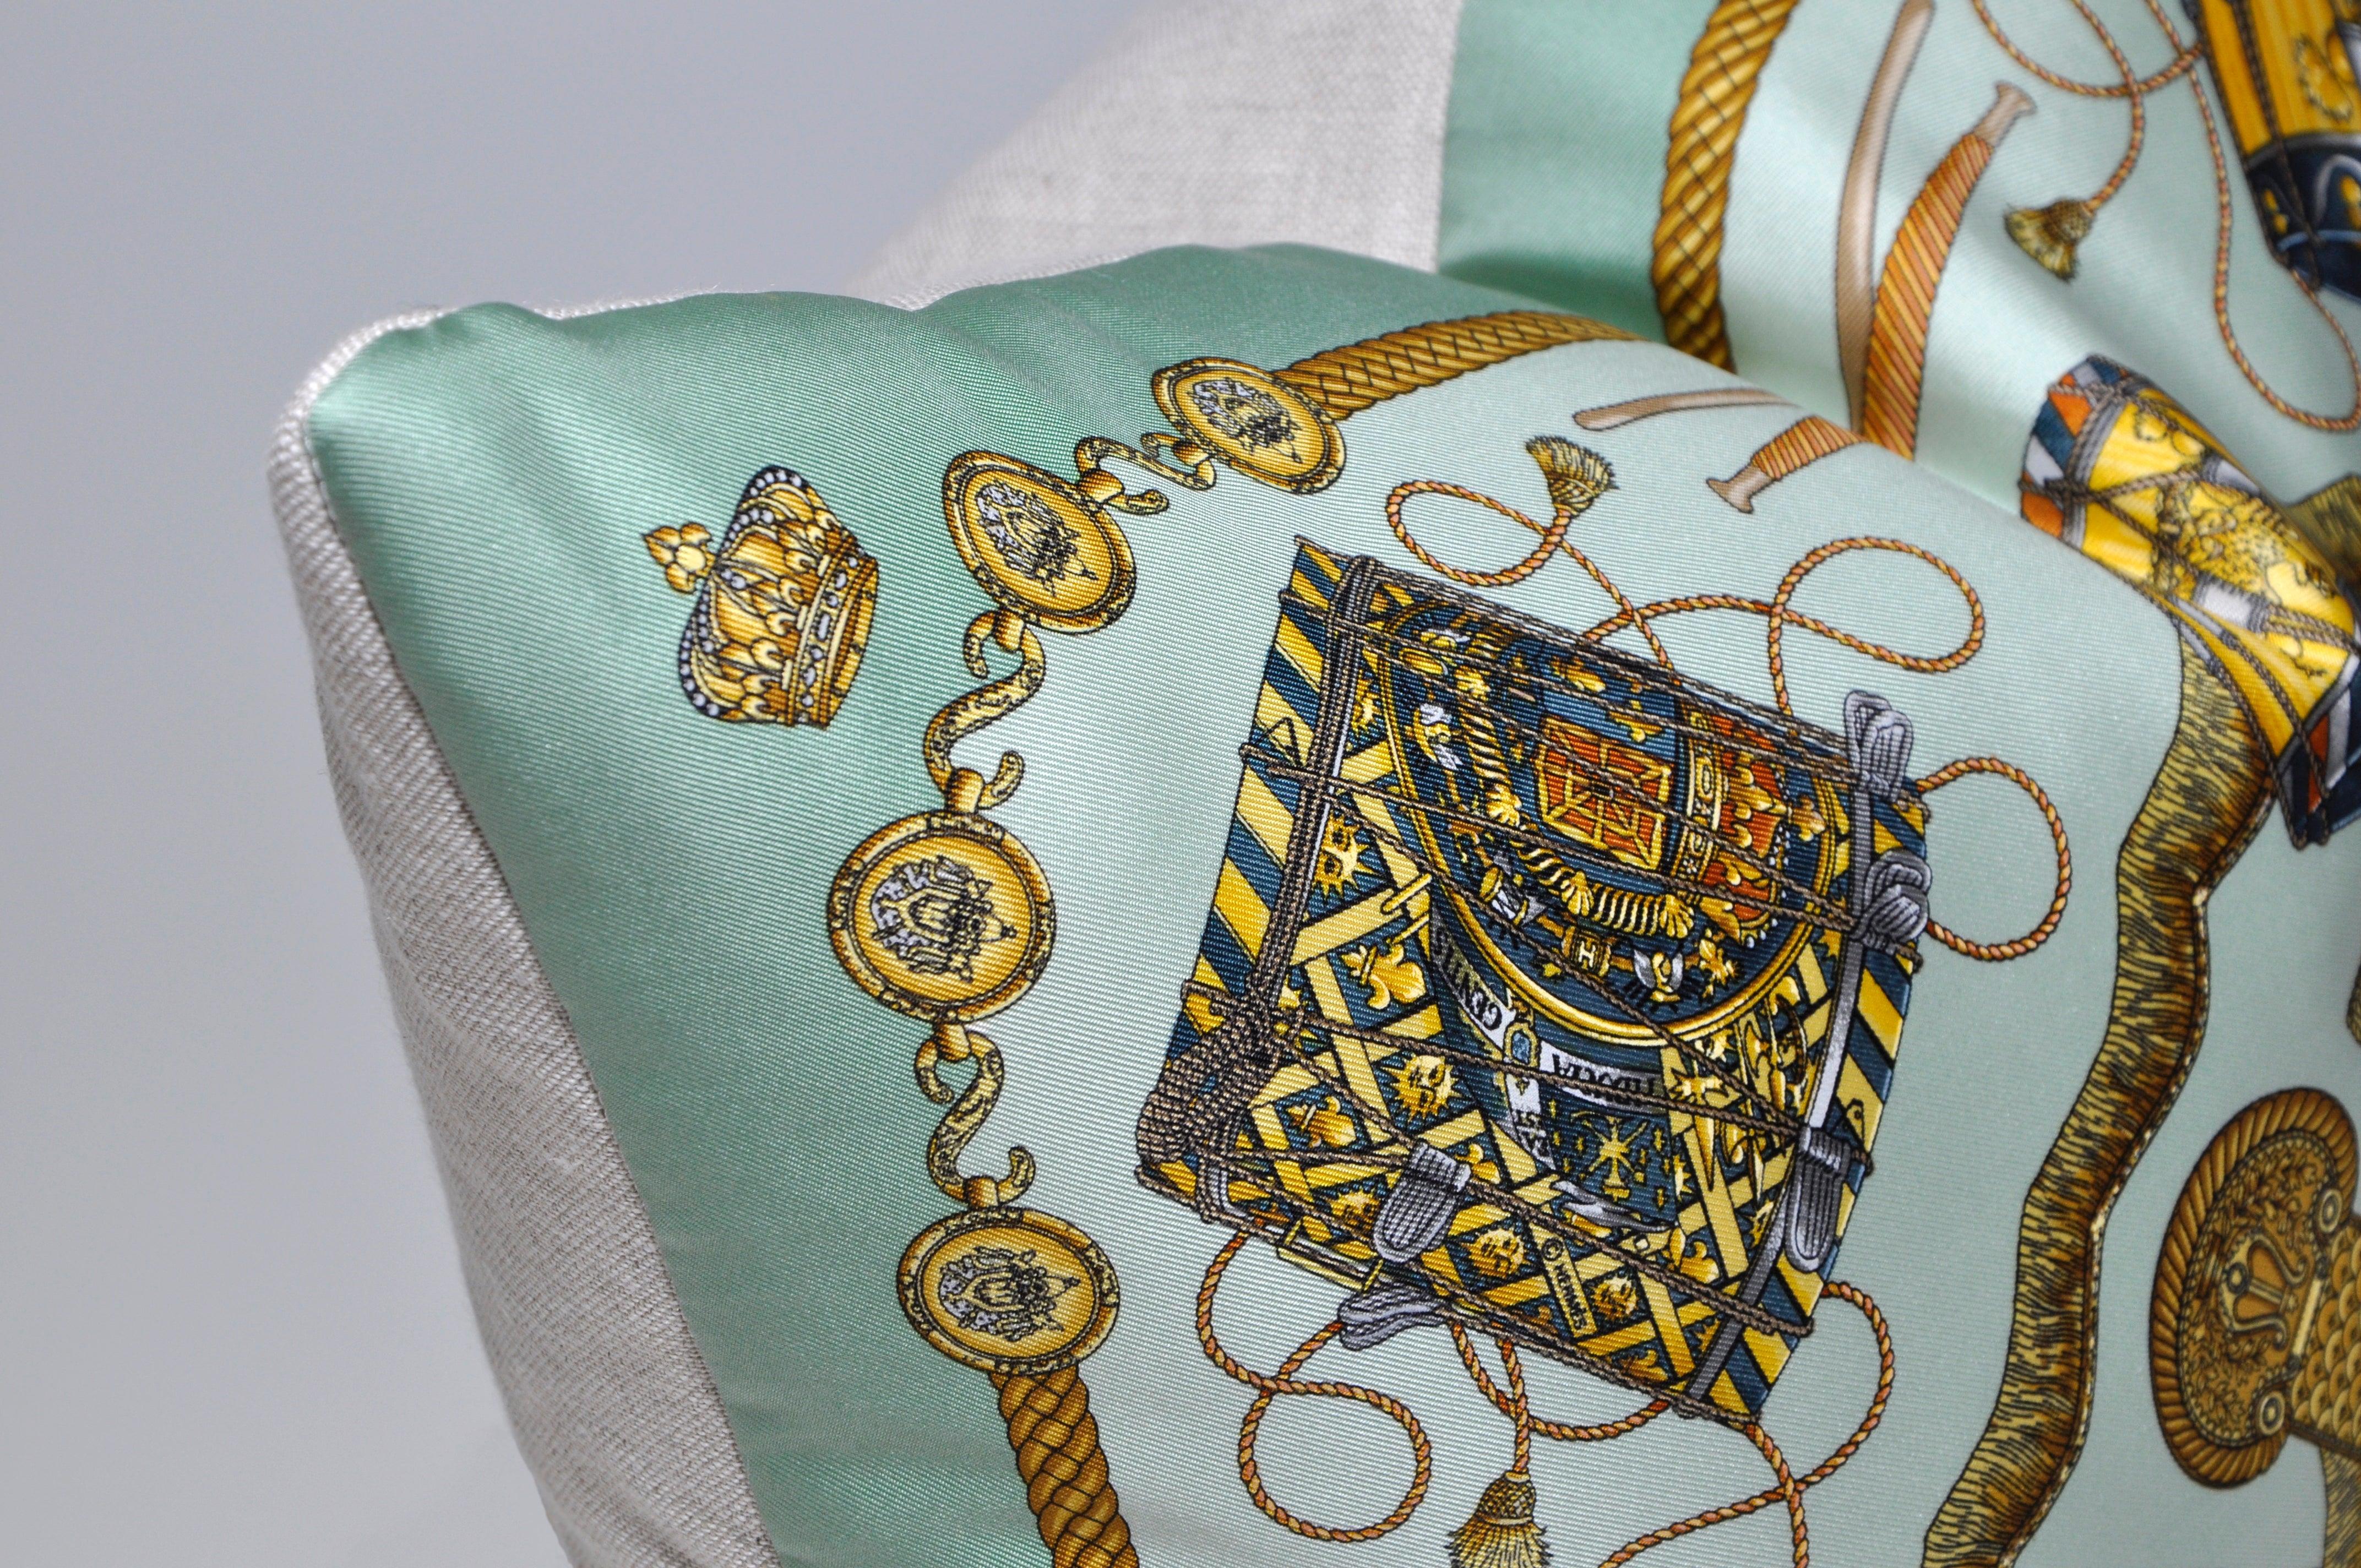 Le studio Katie Larmour est le premier fabricant d'oreillers en forme de foulard vintage. Ayant acquis une certaine notoriété pour son idée et ses créations uniques en 2013 - présentées dans des journaux comme le Financial Times, et vendues pour la